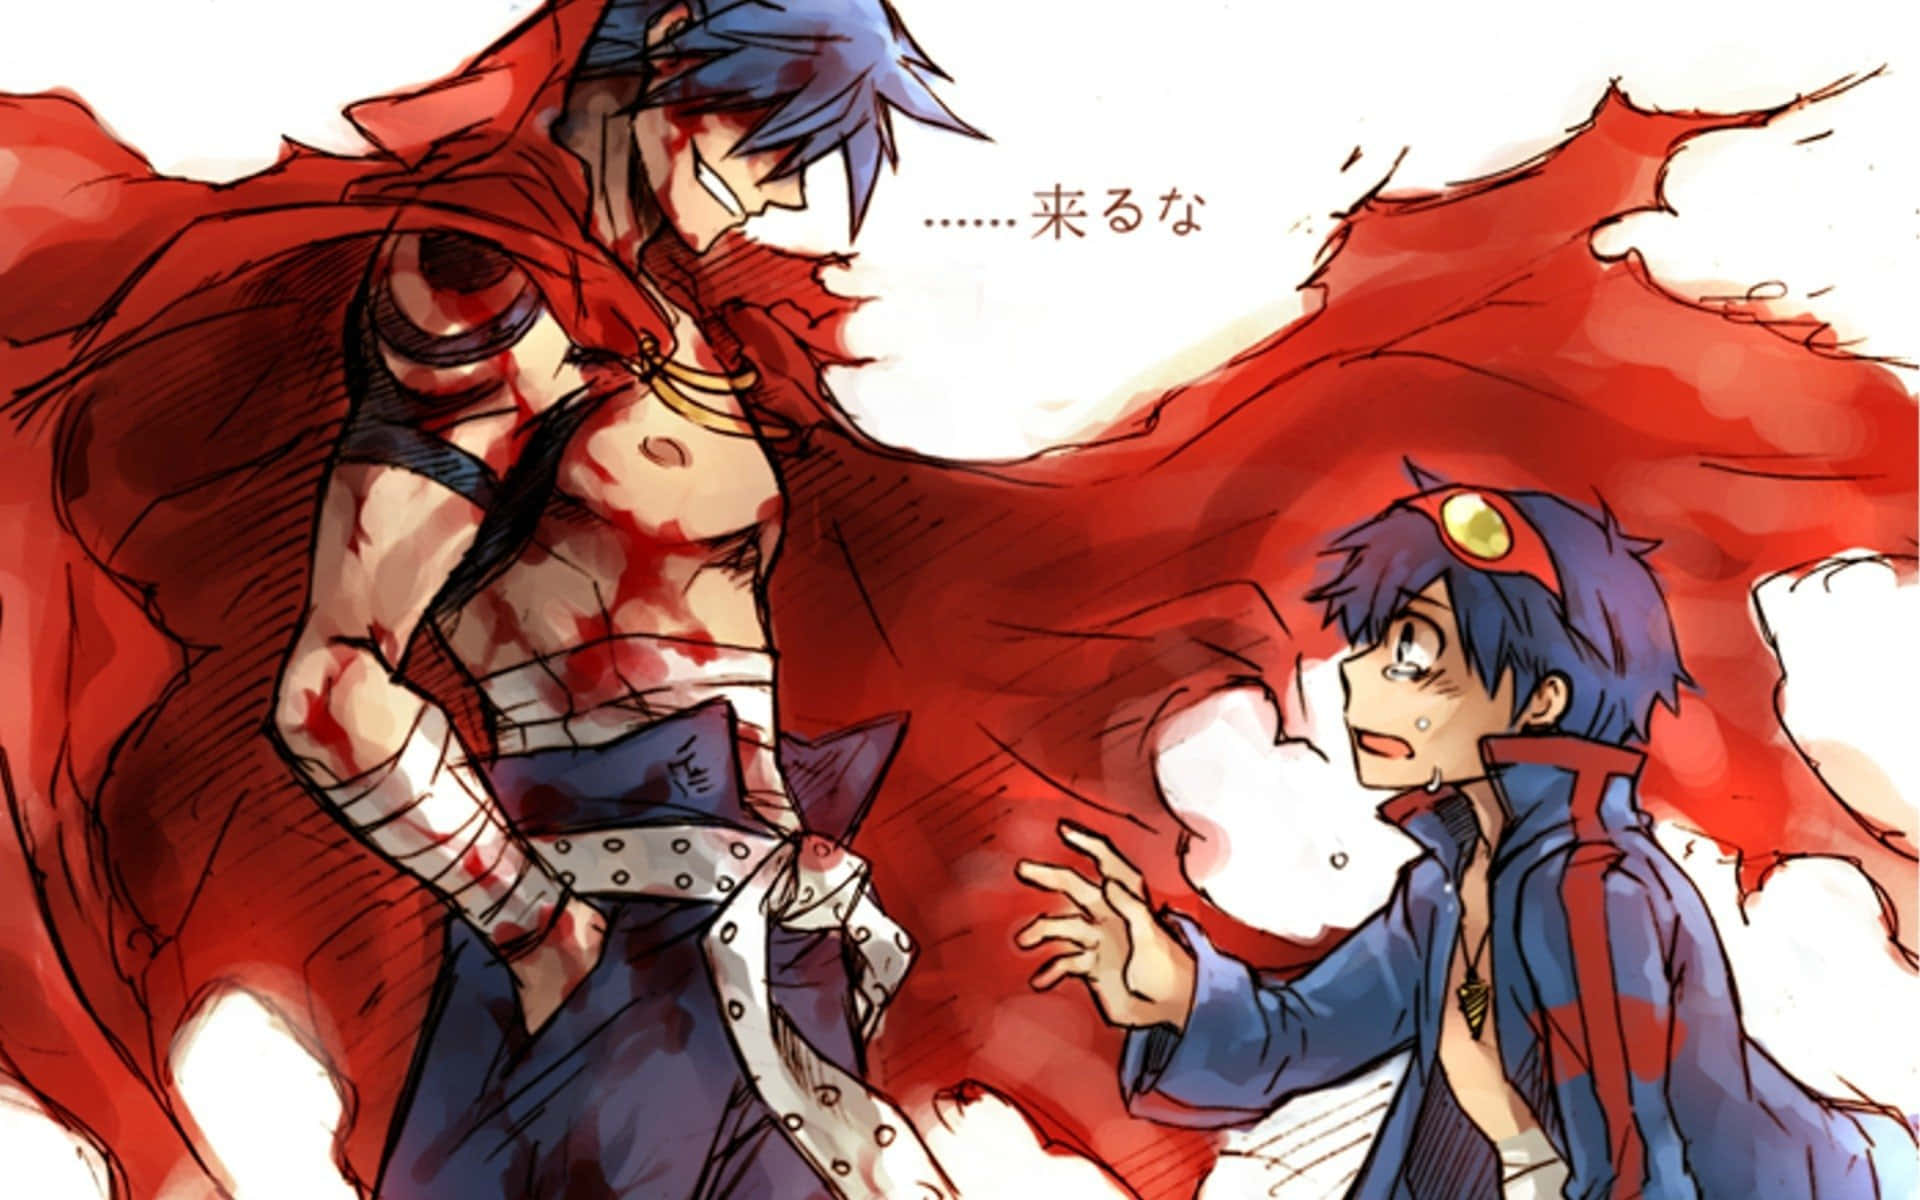 Einezeichnung Von Zwei Anime-charakteren Mit Roten Und Blauen Haaren